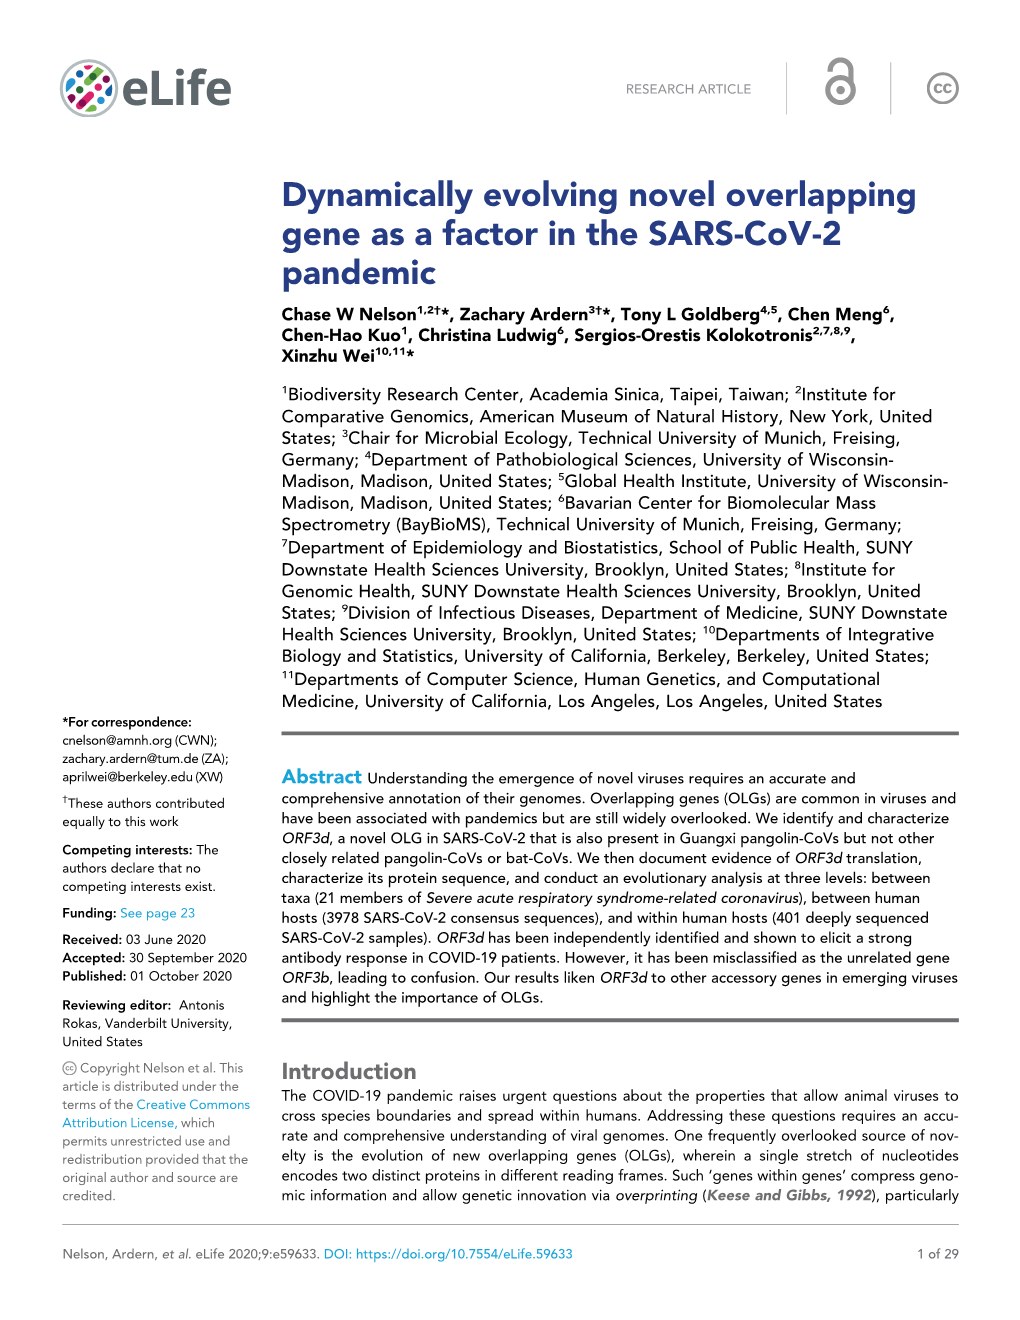 Dynamically Evolving Novel Overlapping Gene